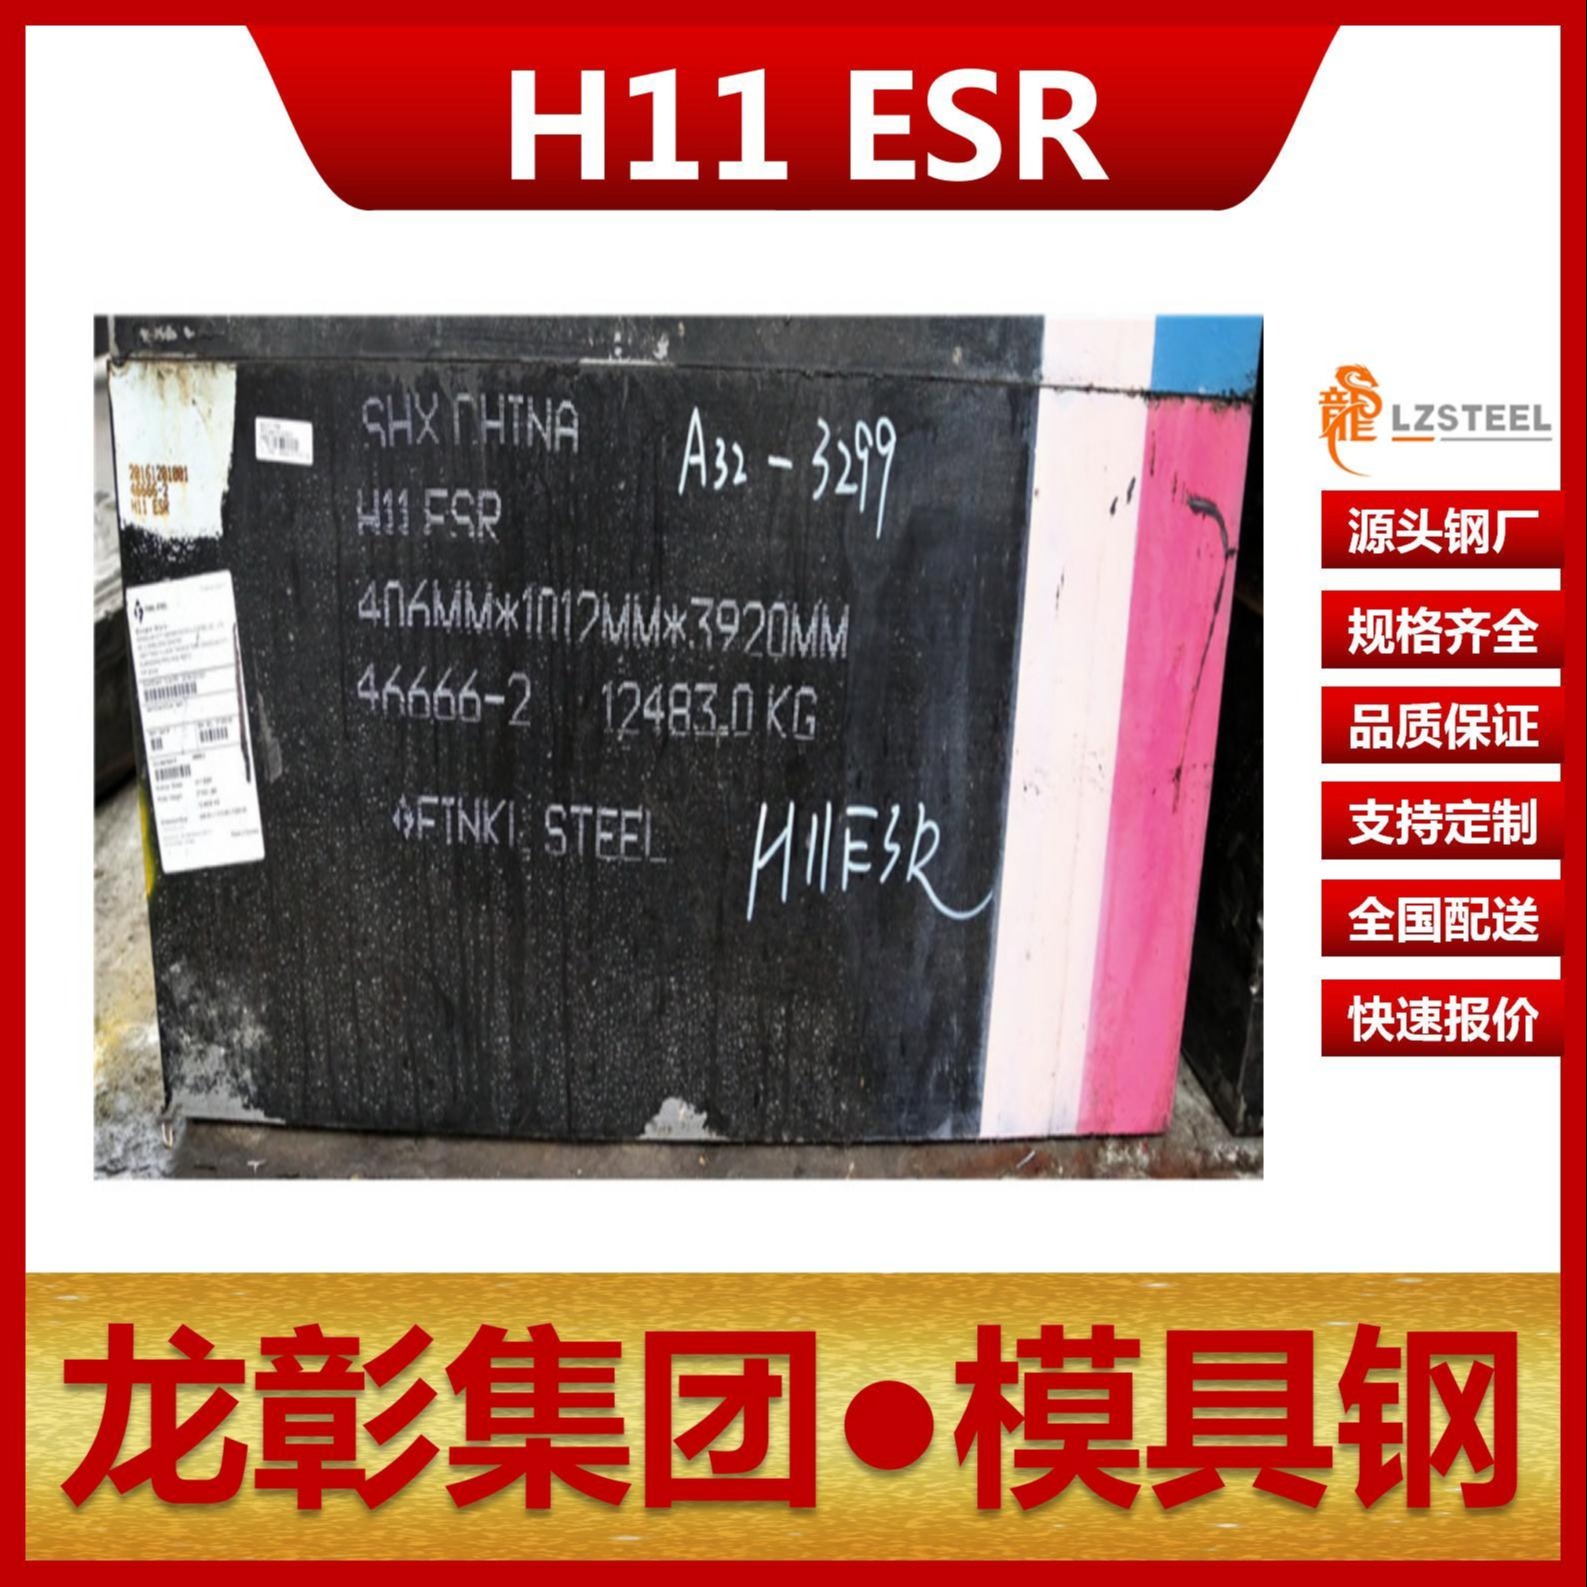 芬可乐H11 ESR模具钢现货批零 进口H11 ESR扁钢圆棒热作模具钢龙彰集团图片